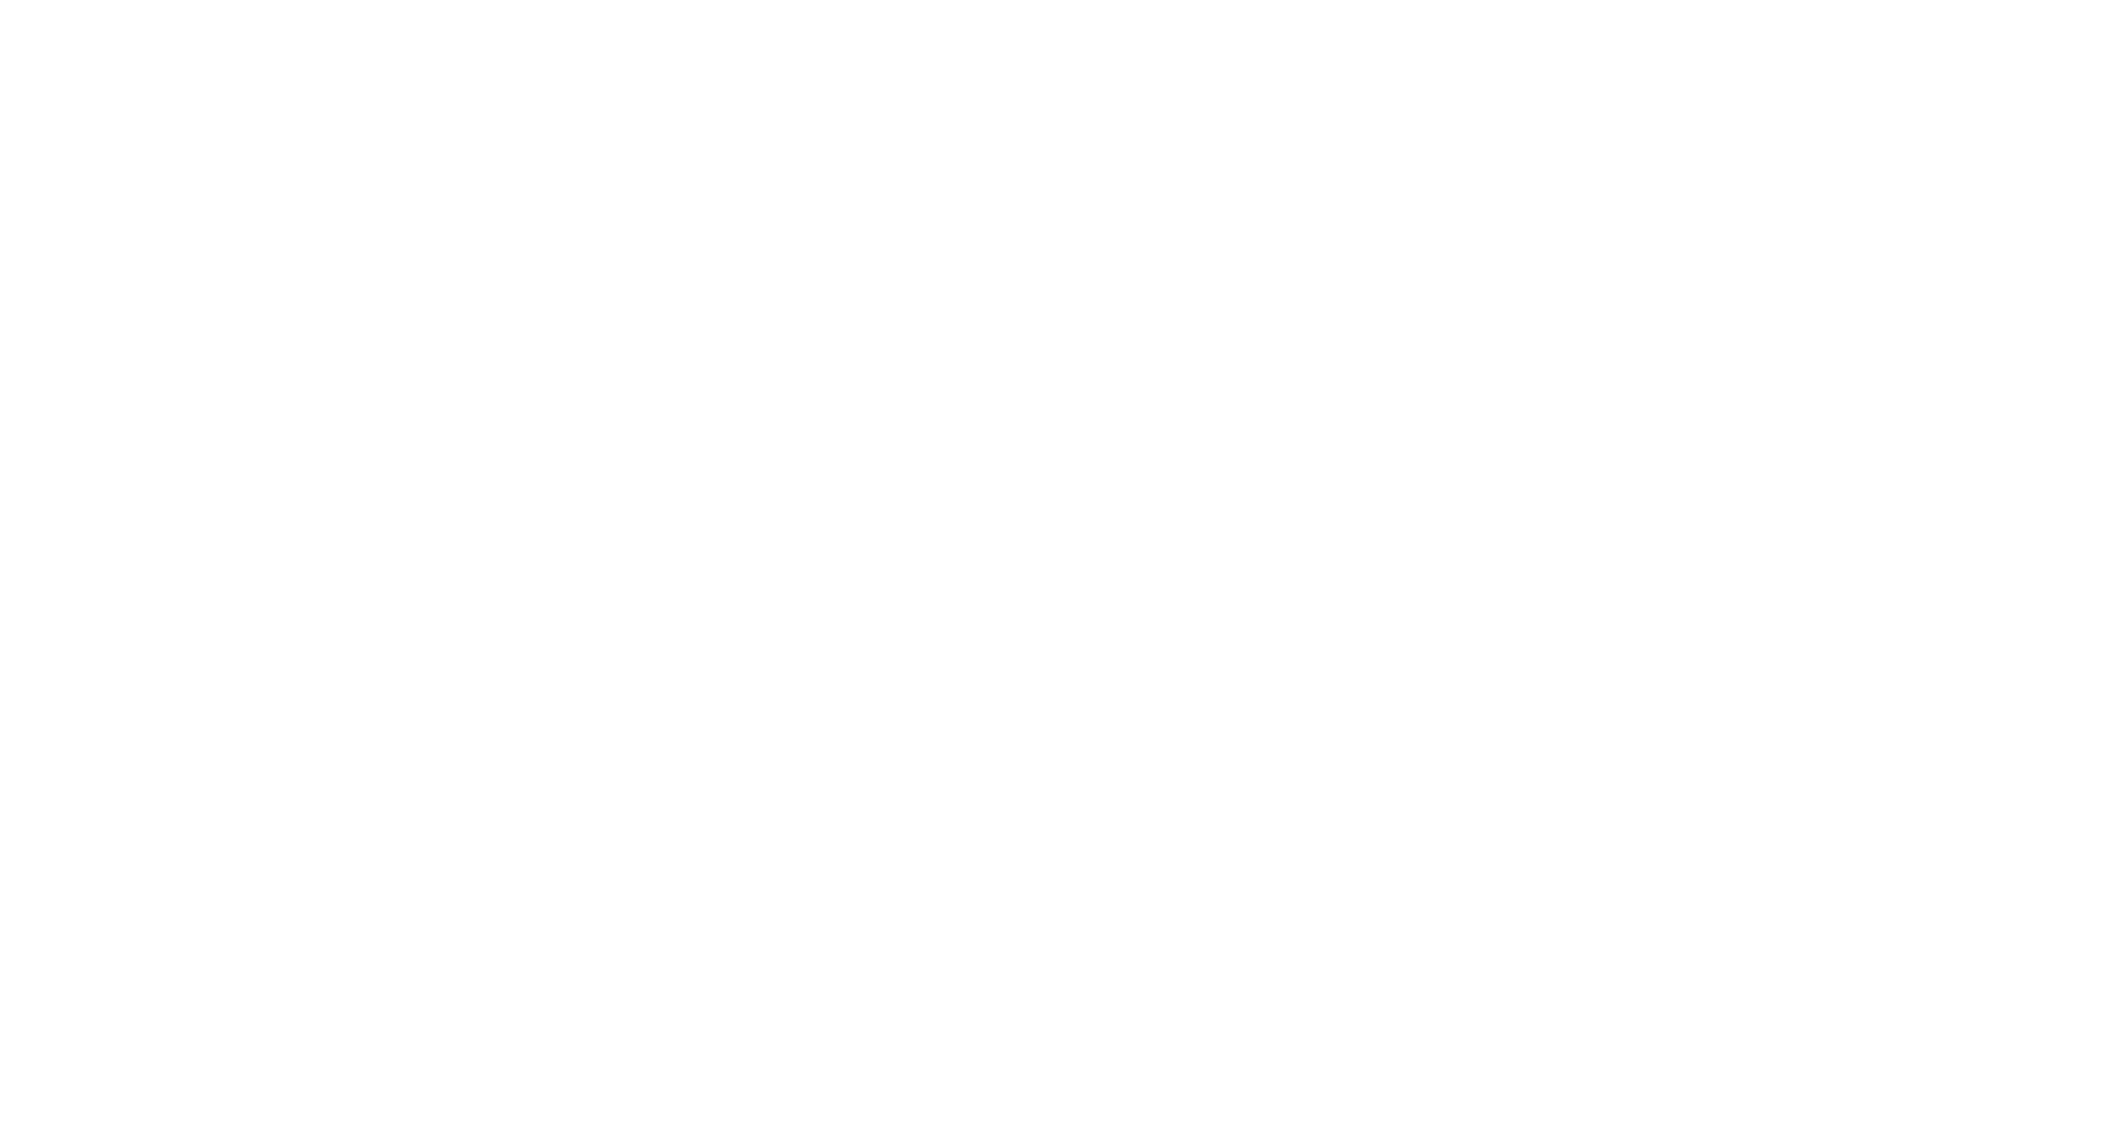 Scodix